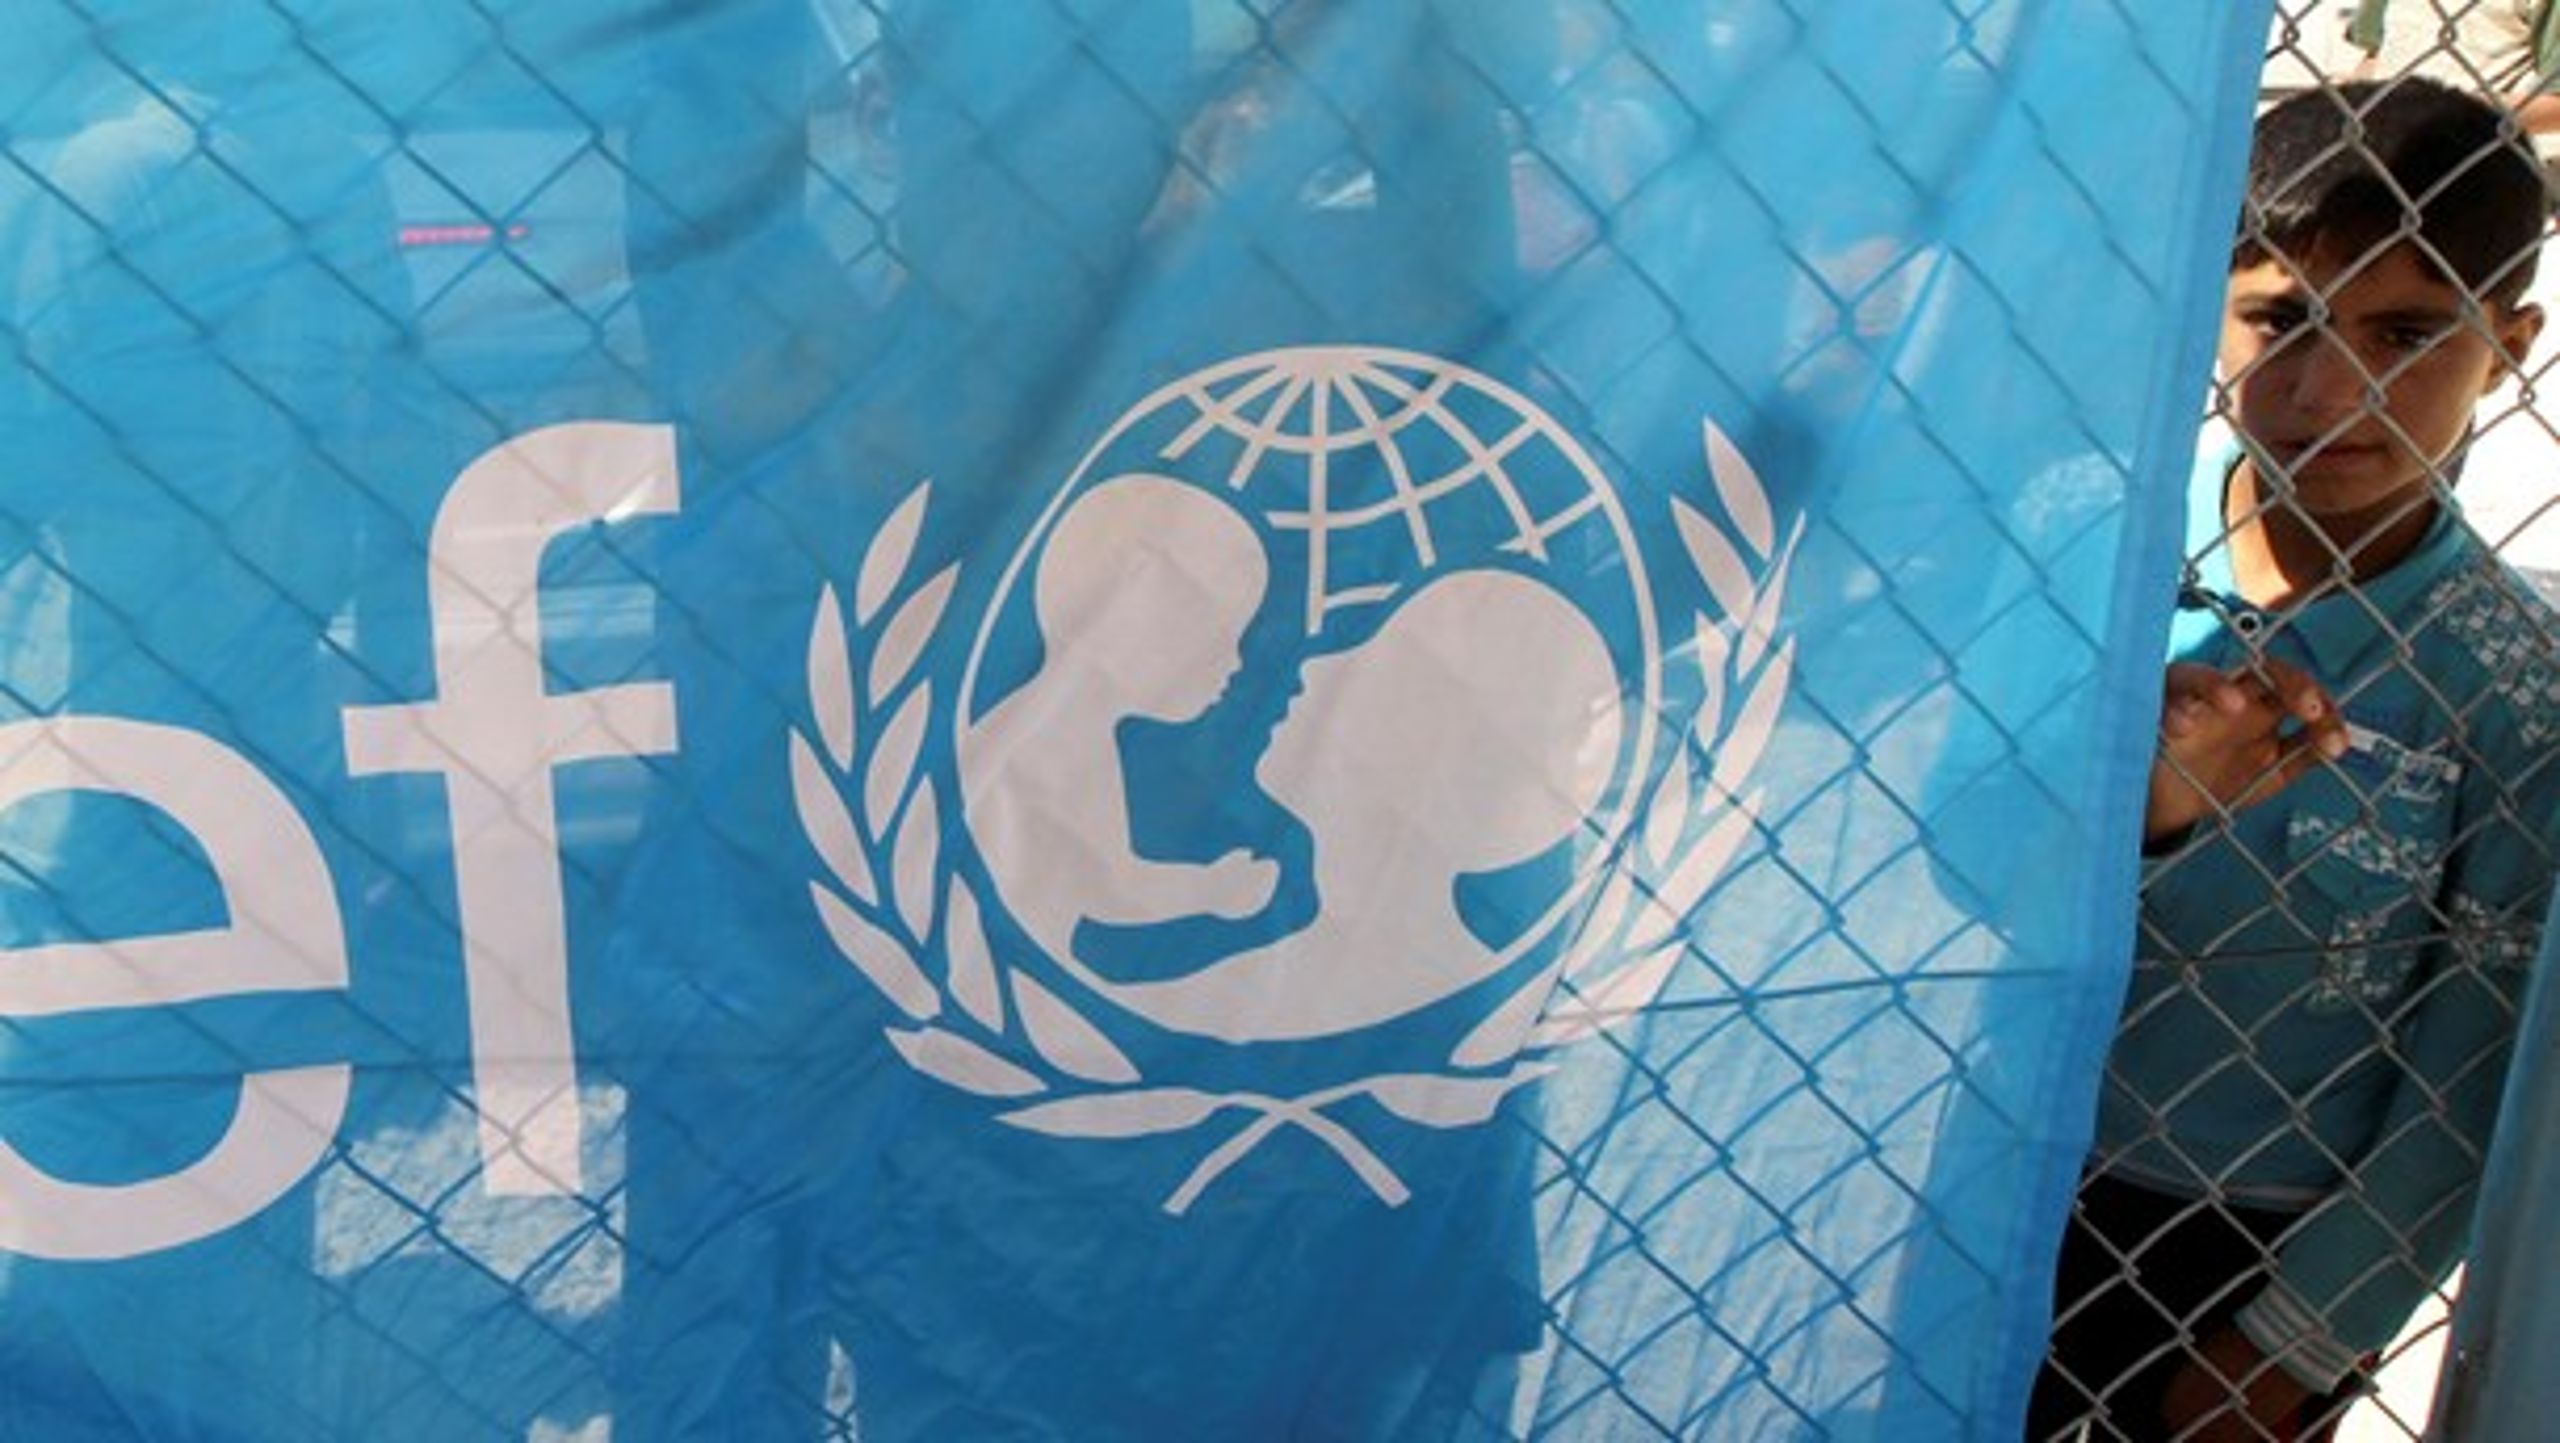 Unicef&nbsp;er verdens største humanitære organisation for børn. Den danske afdeling&nbsp;blev stiftet i 1954.<br>